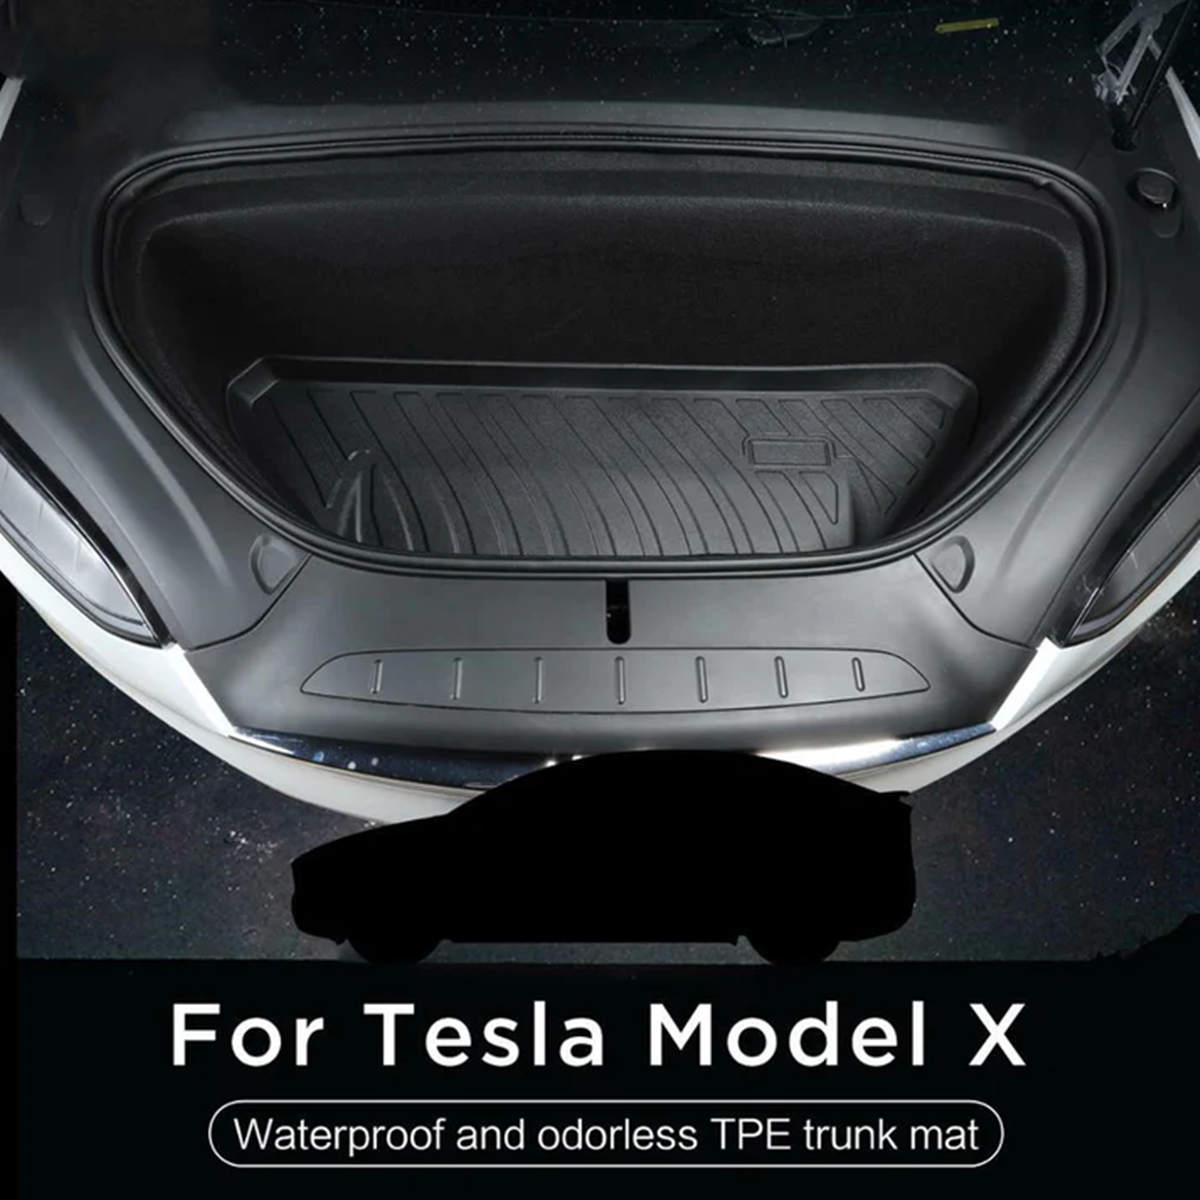 5 Seater Tesla Model X Floor Mats (20212024)